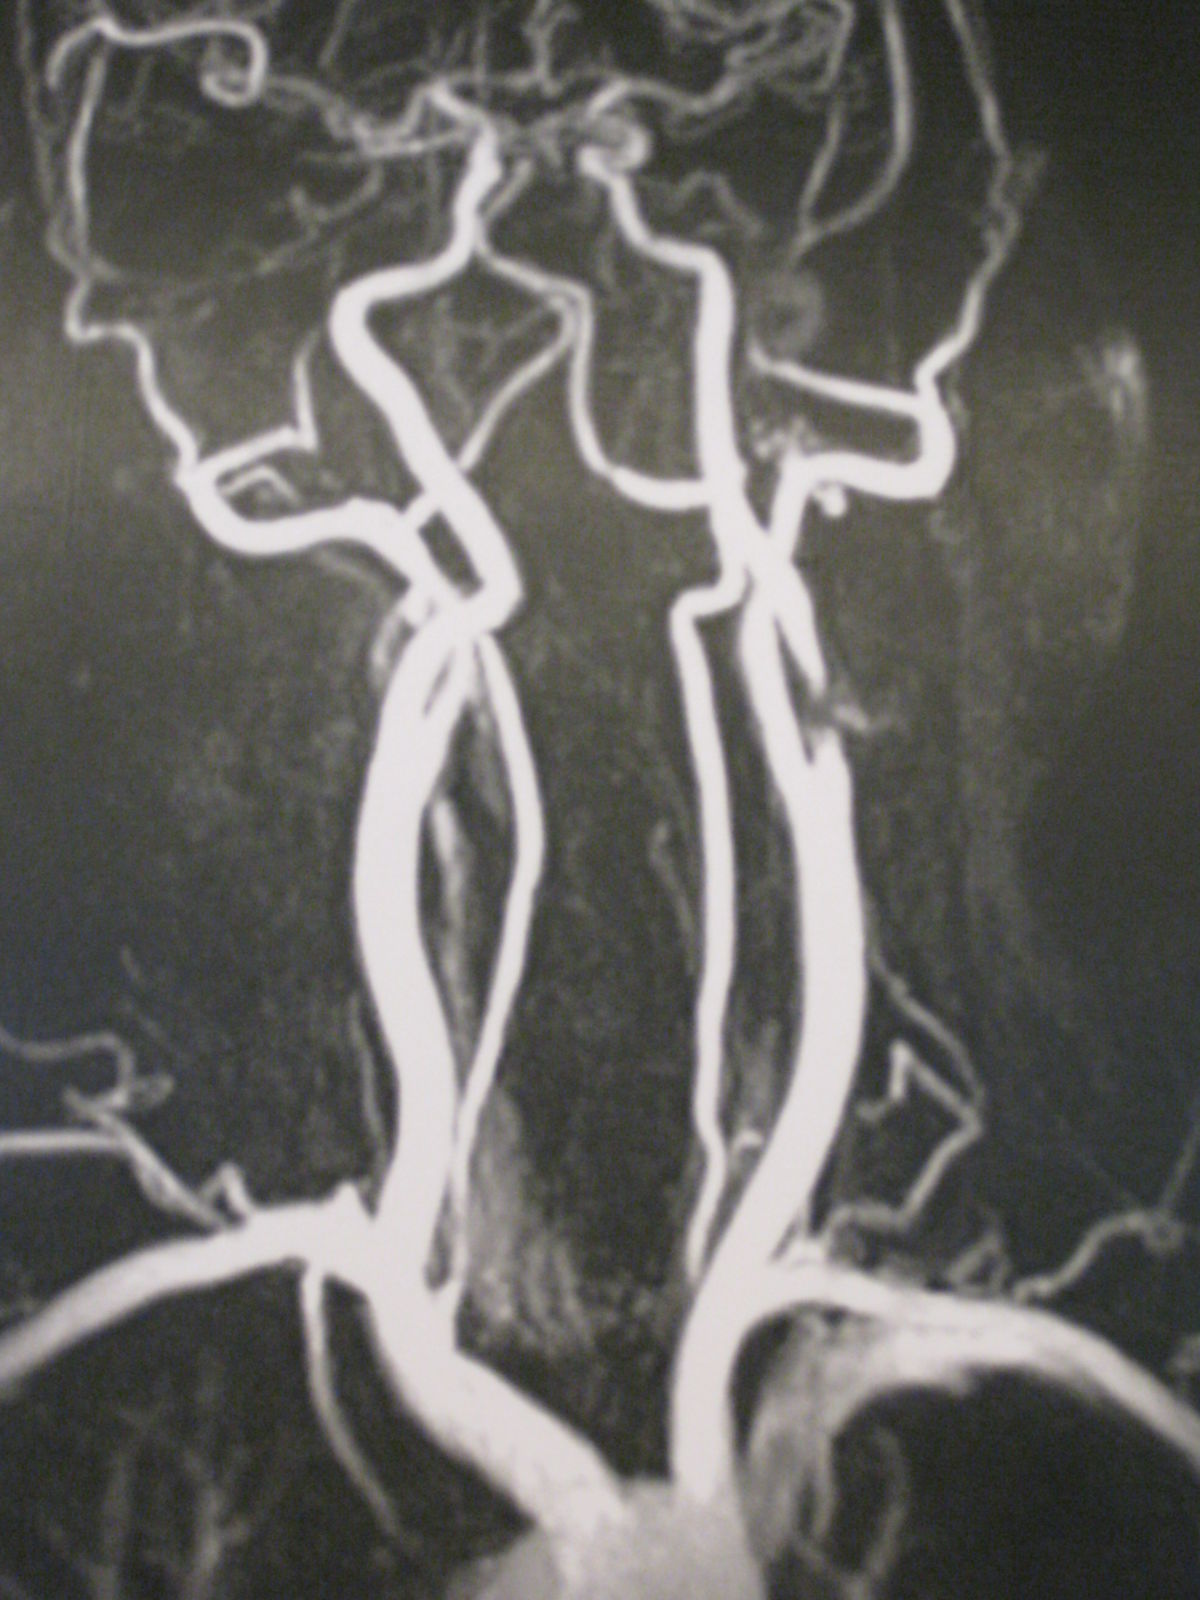 Carotisstenose links-MR Angiografie